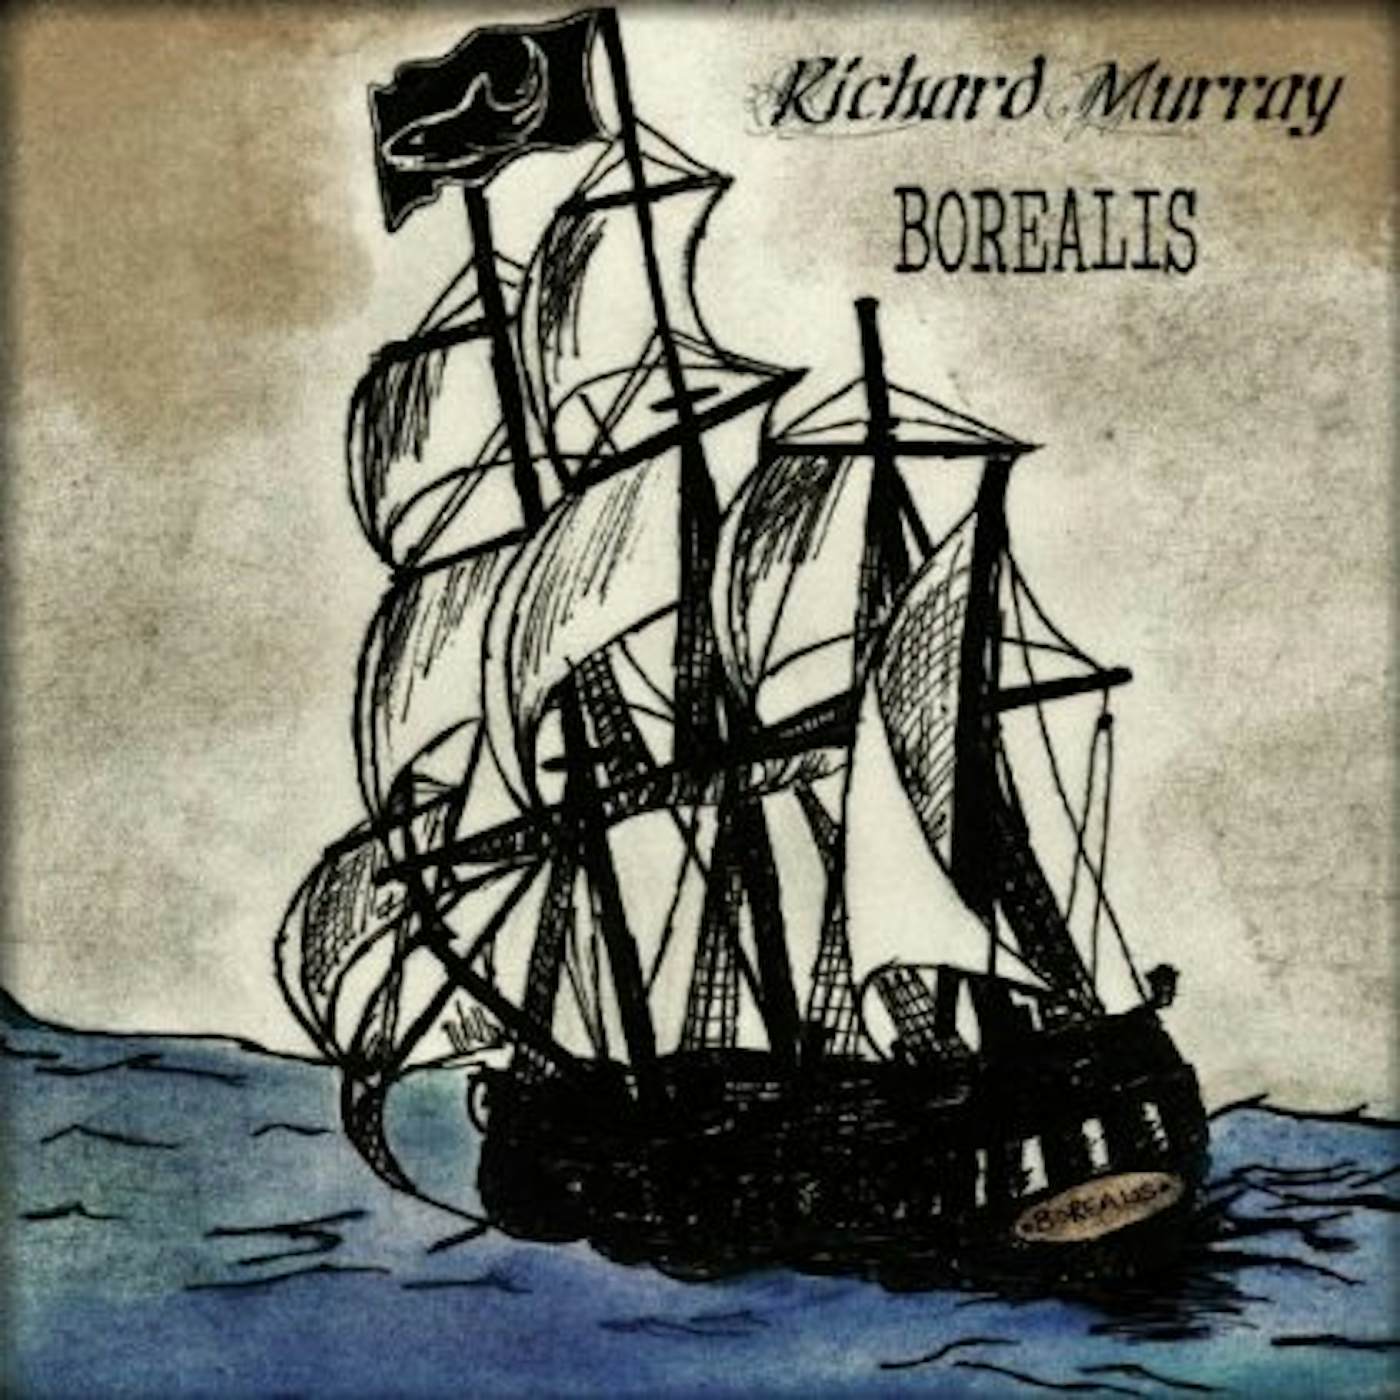 Richard Murray BOREALIS CD